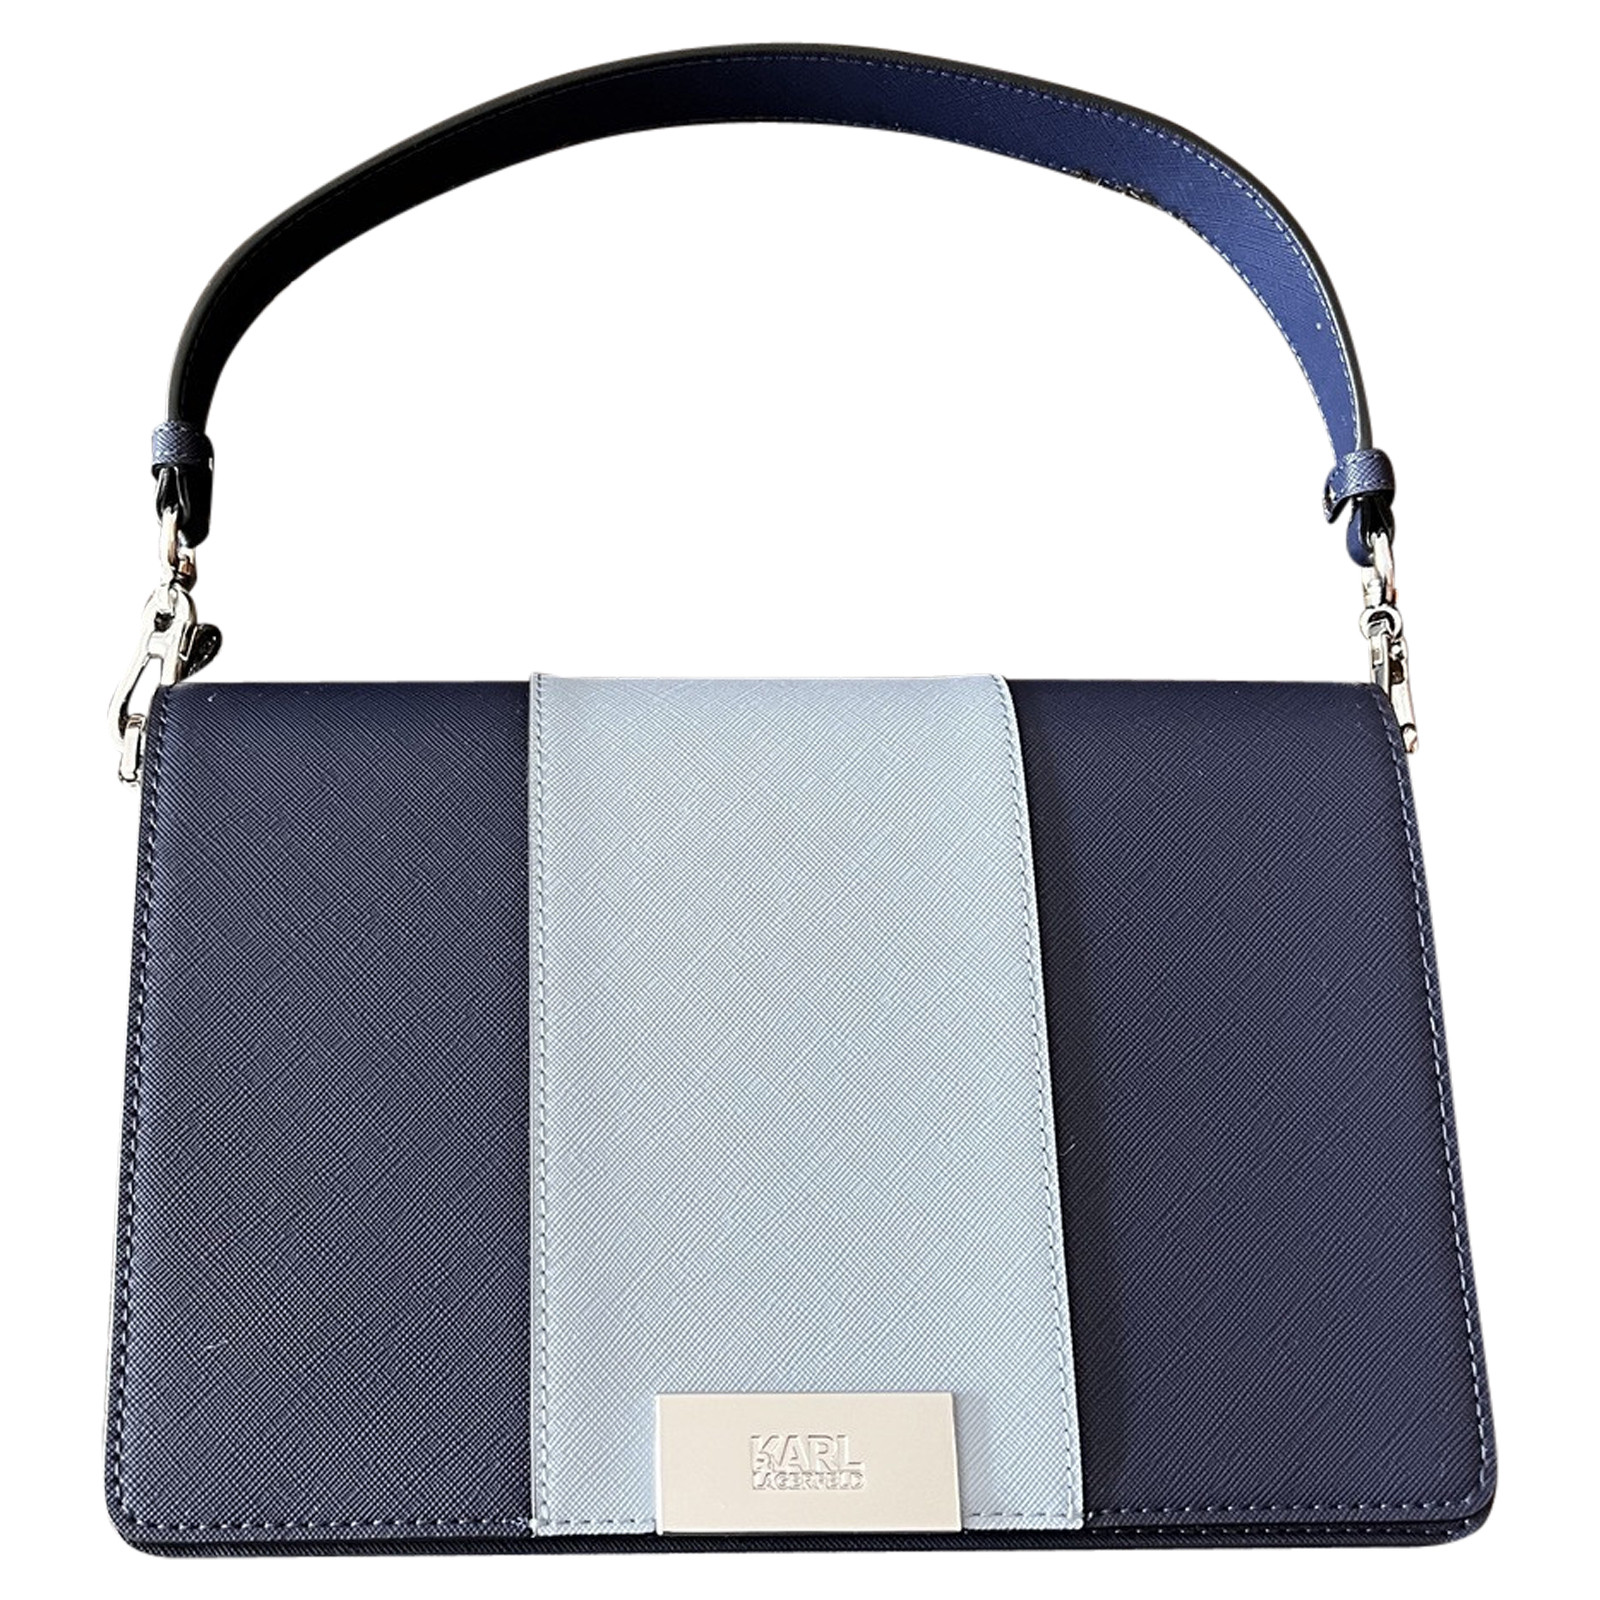 Karl Lagerfeld Handbag Leather in Blue - Acheter Karl Lagerfeld Handbag  Leather in Blue d'occasion pour 185€ (7538081)